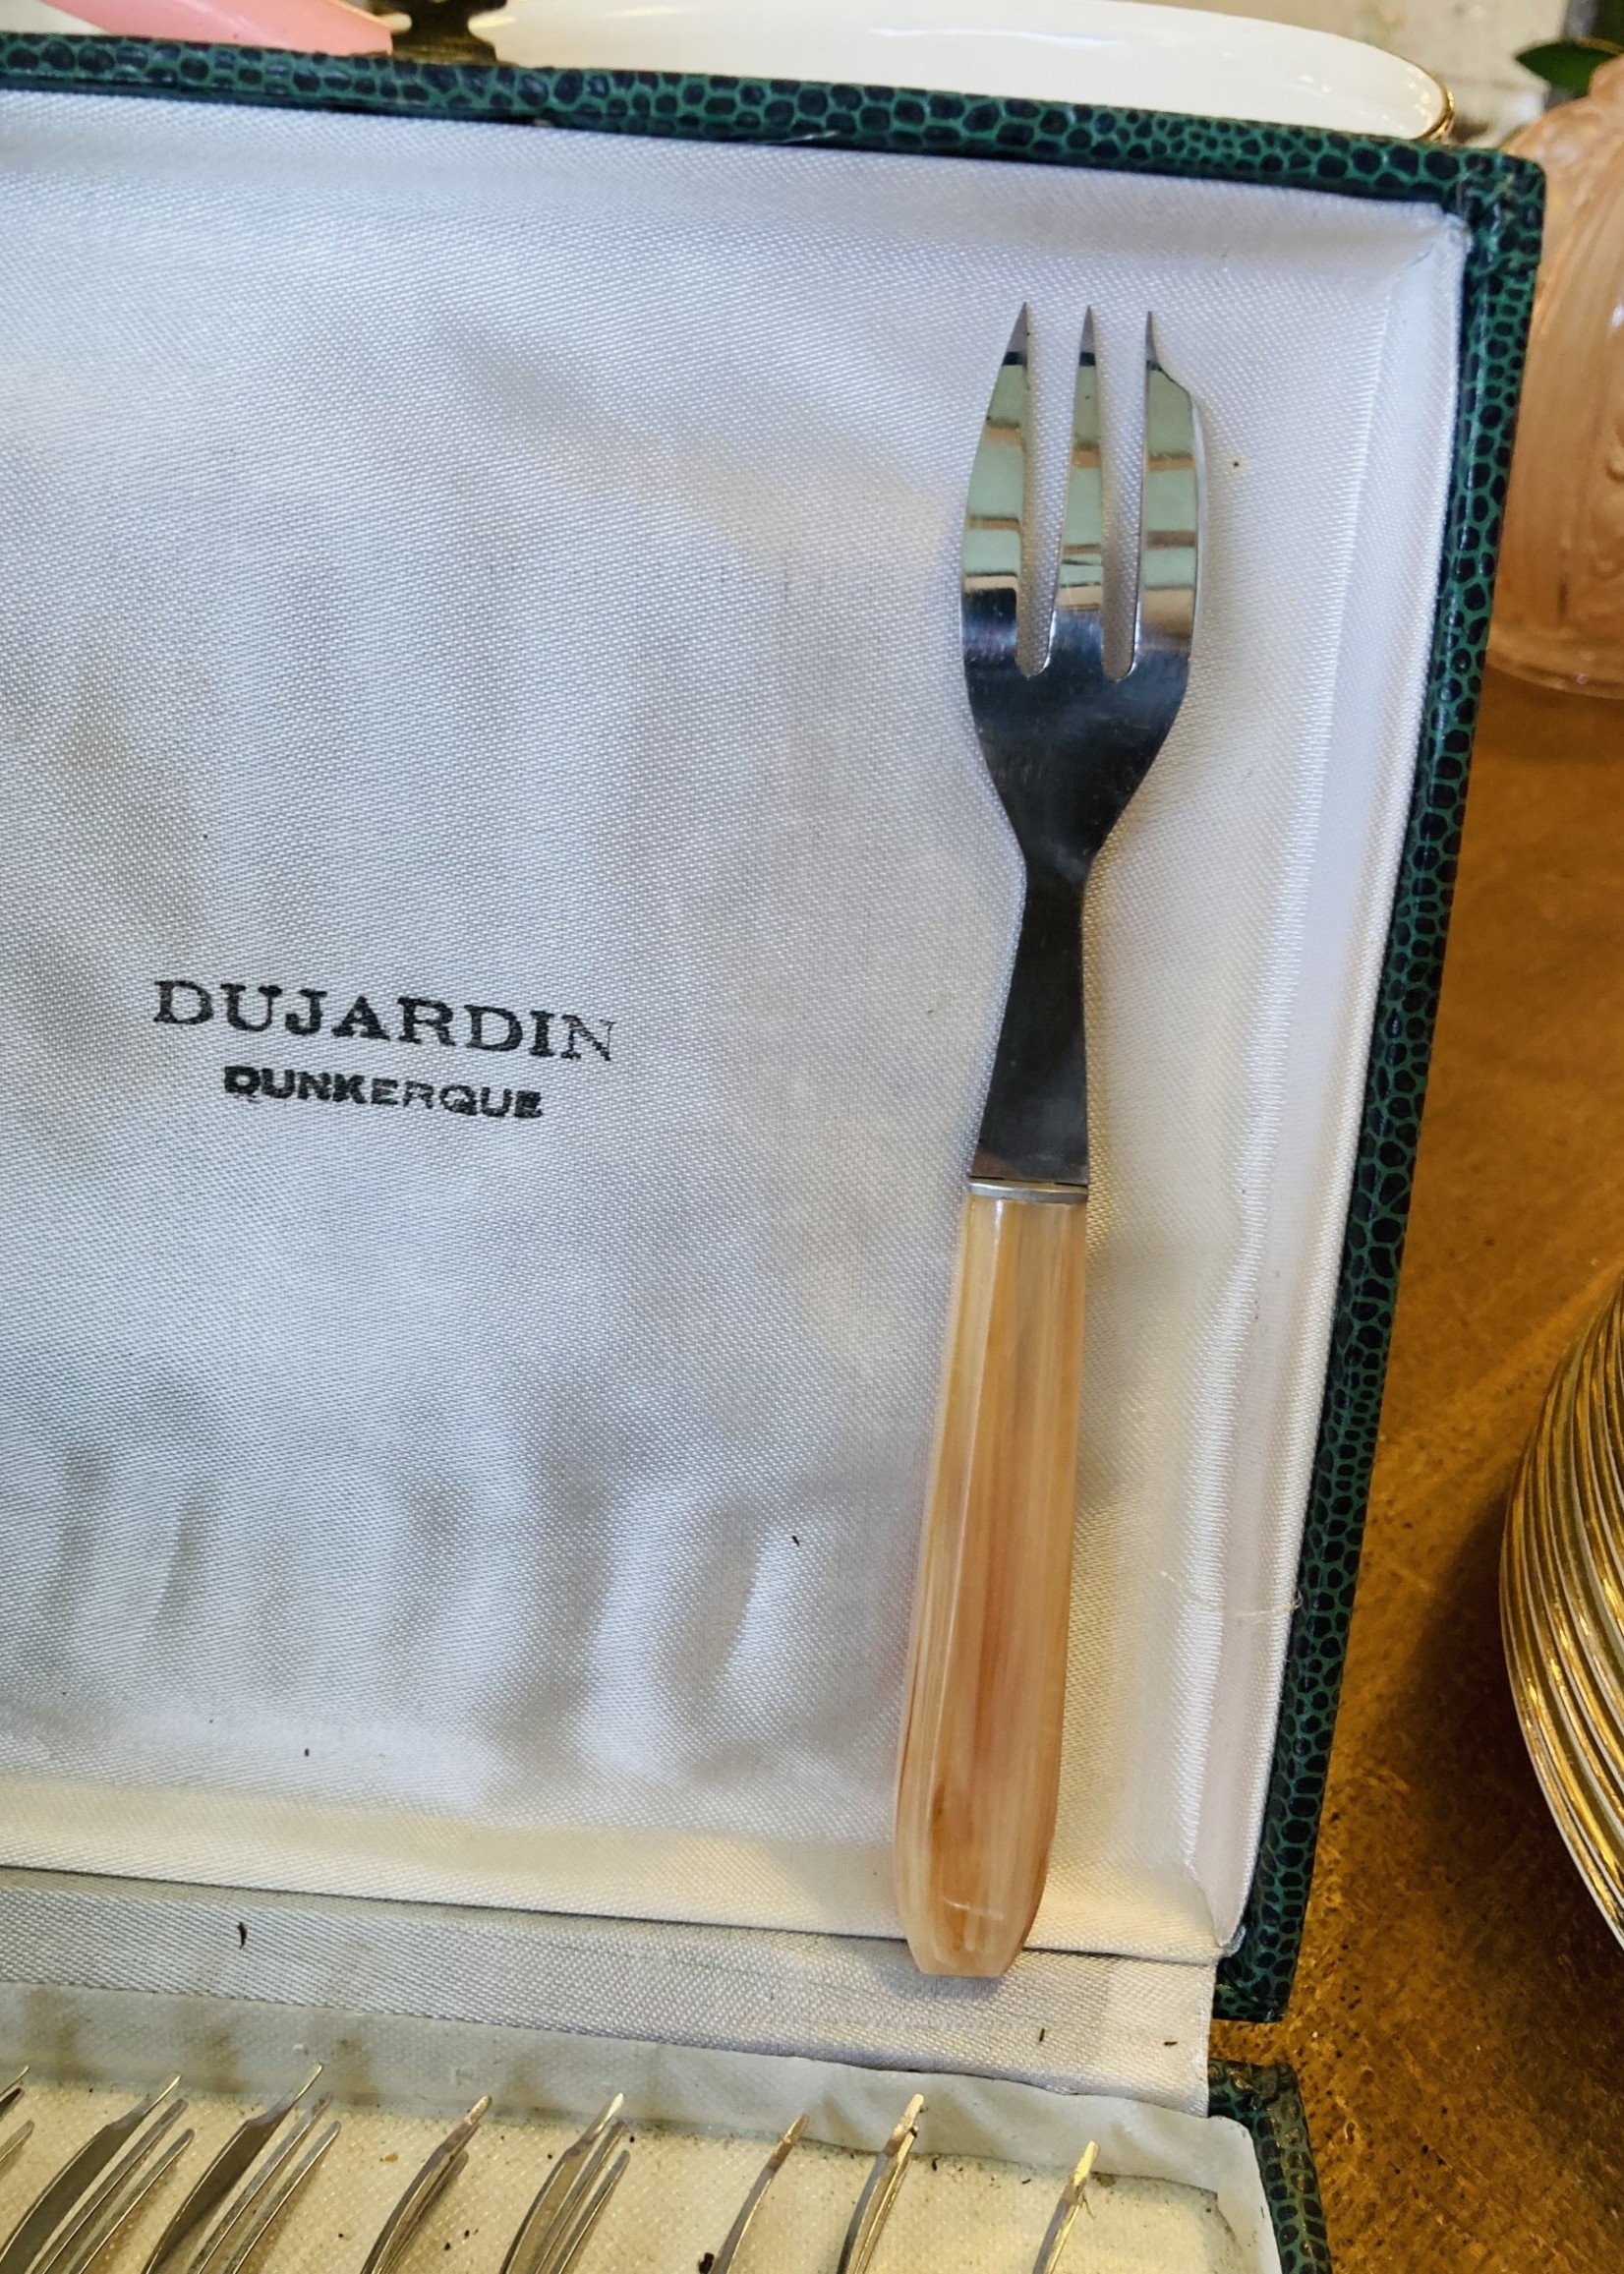 Set of 12 vintage desert forks with pink handle from Dujardin Dunkerque